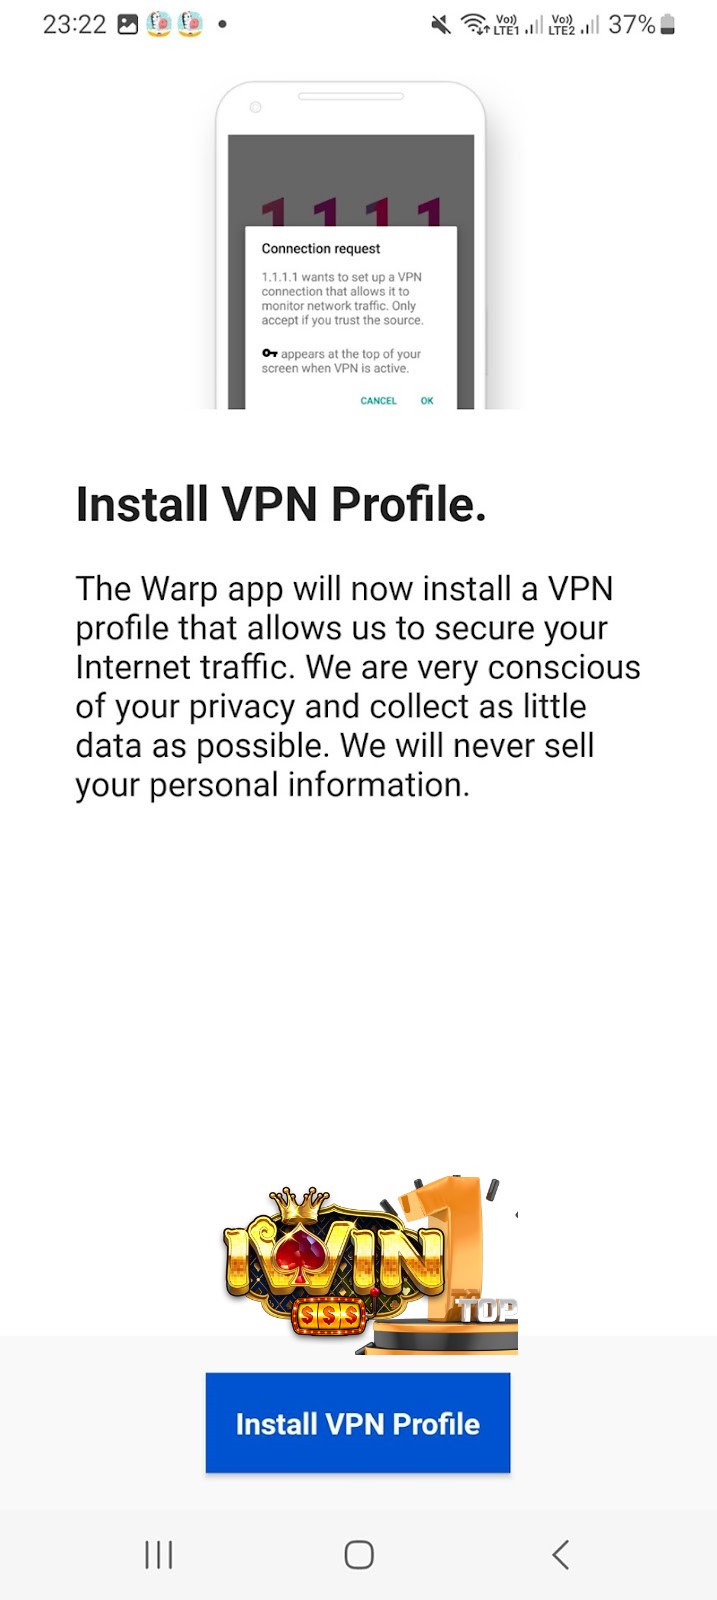 Nhấn vào “Install VPN Profile”